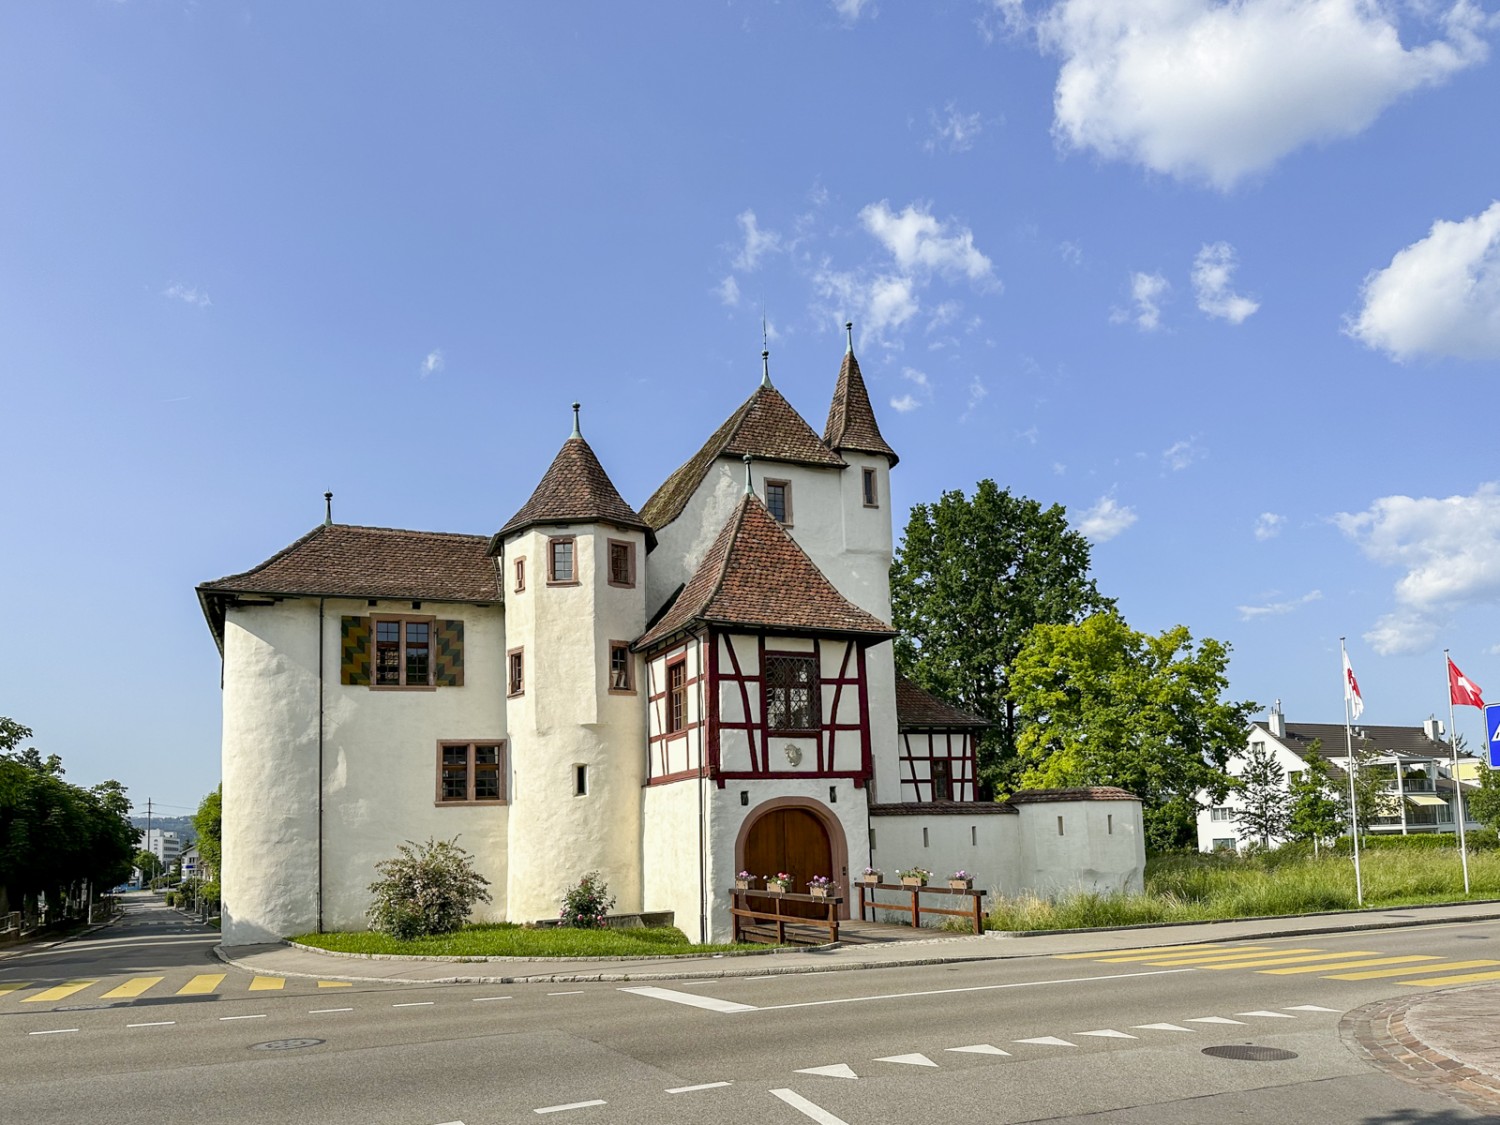 Von Burg zu Burg vor den Toren von Basel